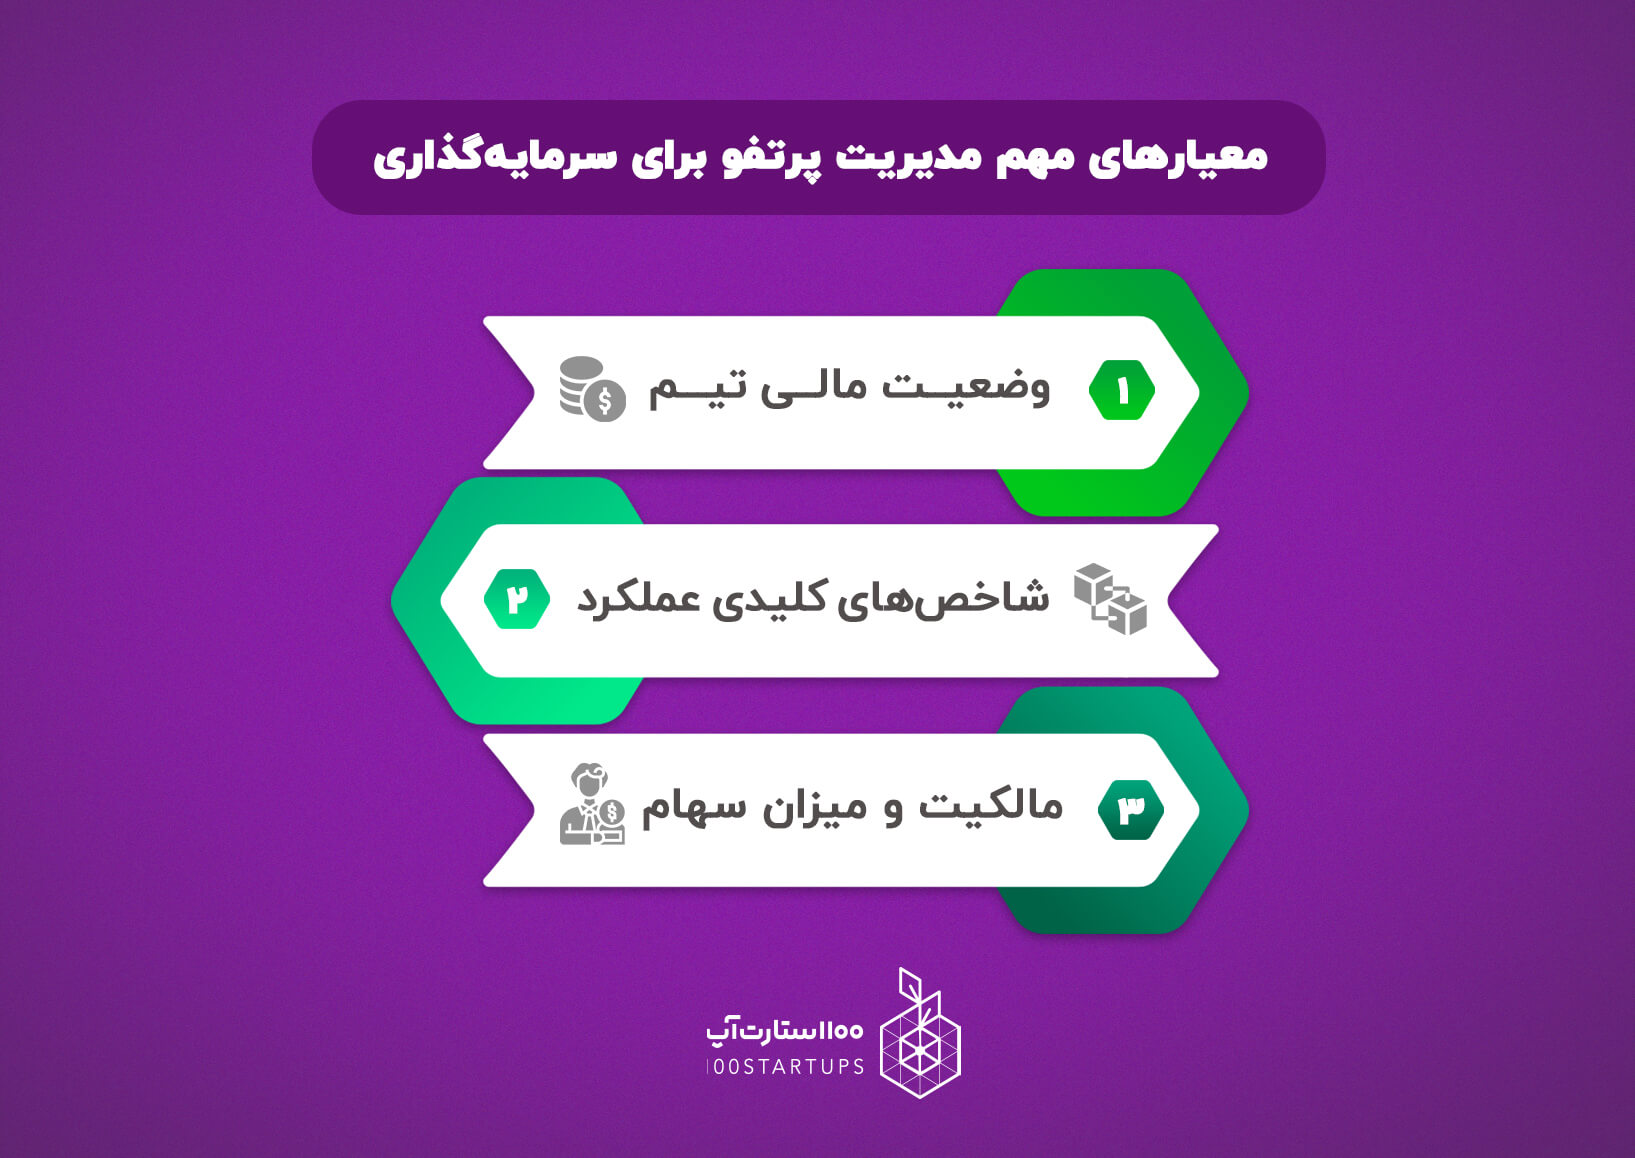 معیار های مهم مدیریت پرتفو برای سرمایه گذاری از زبان حسین جوان